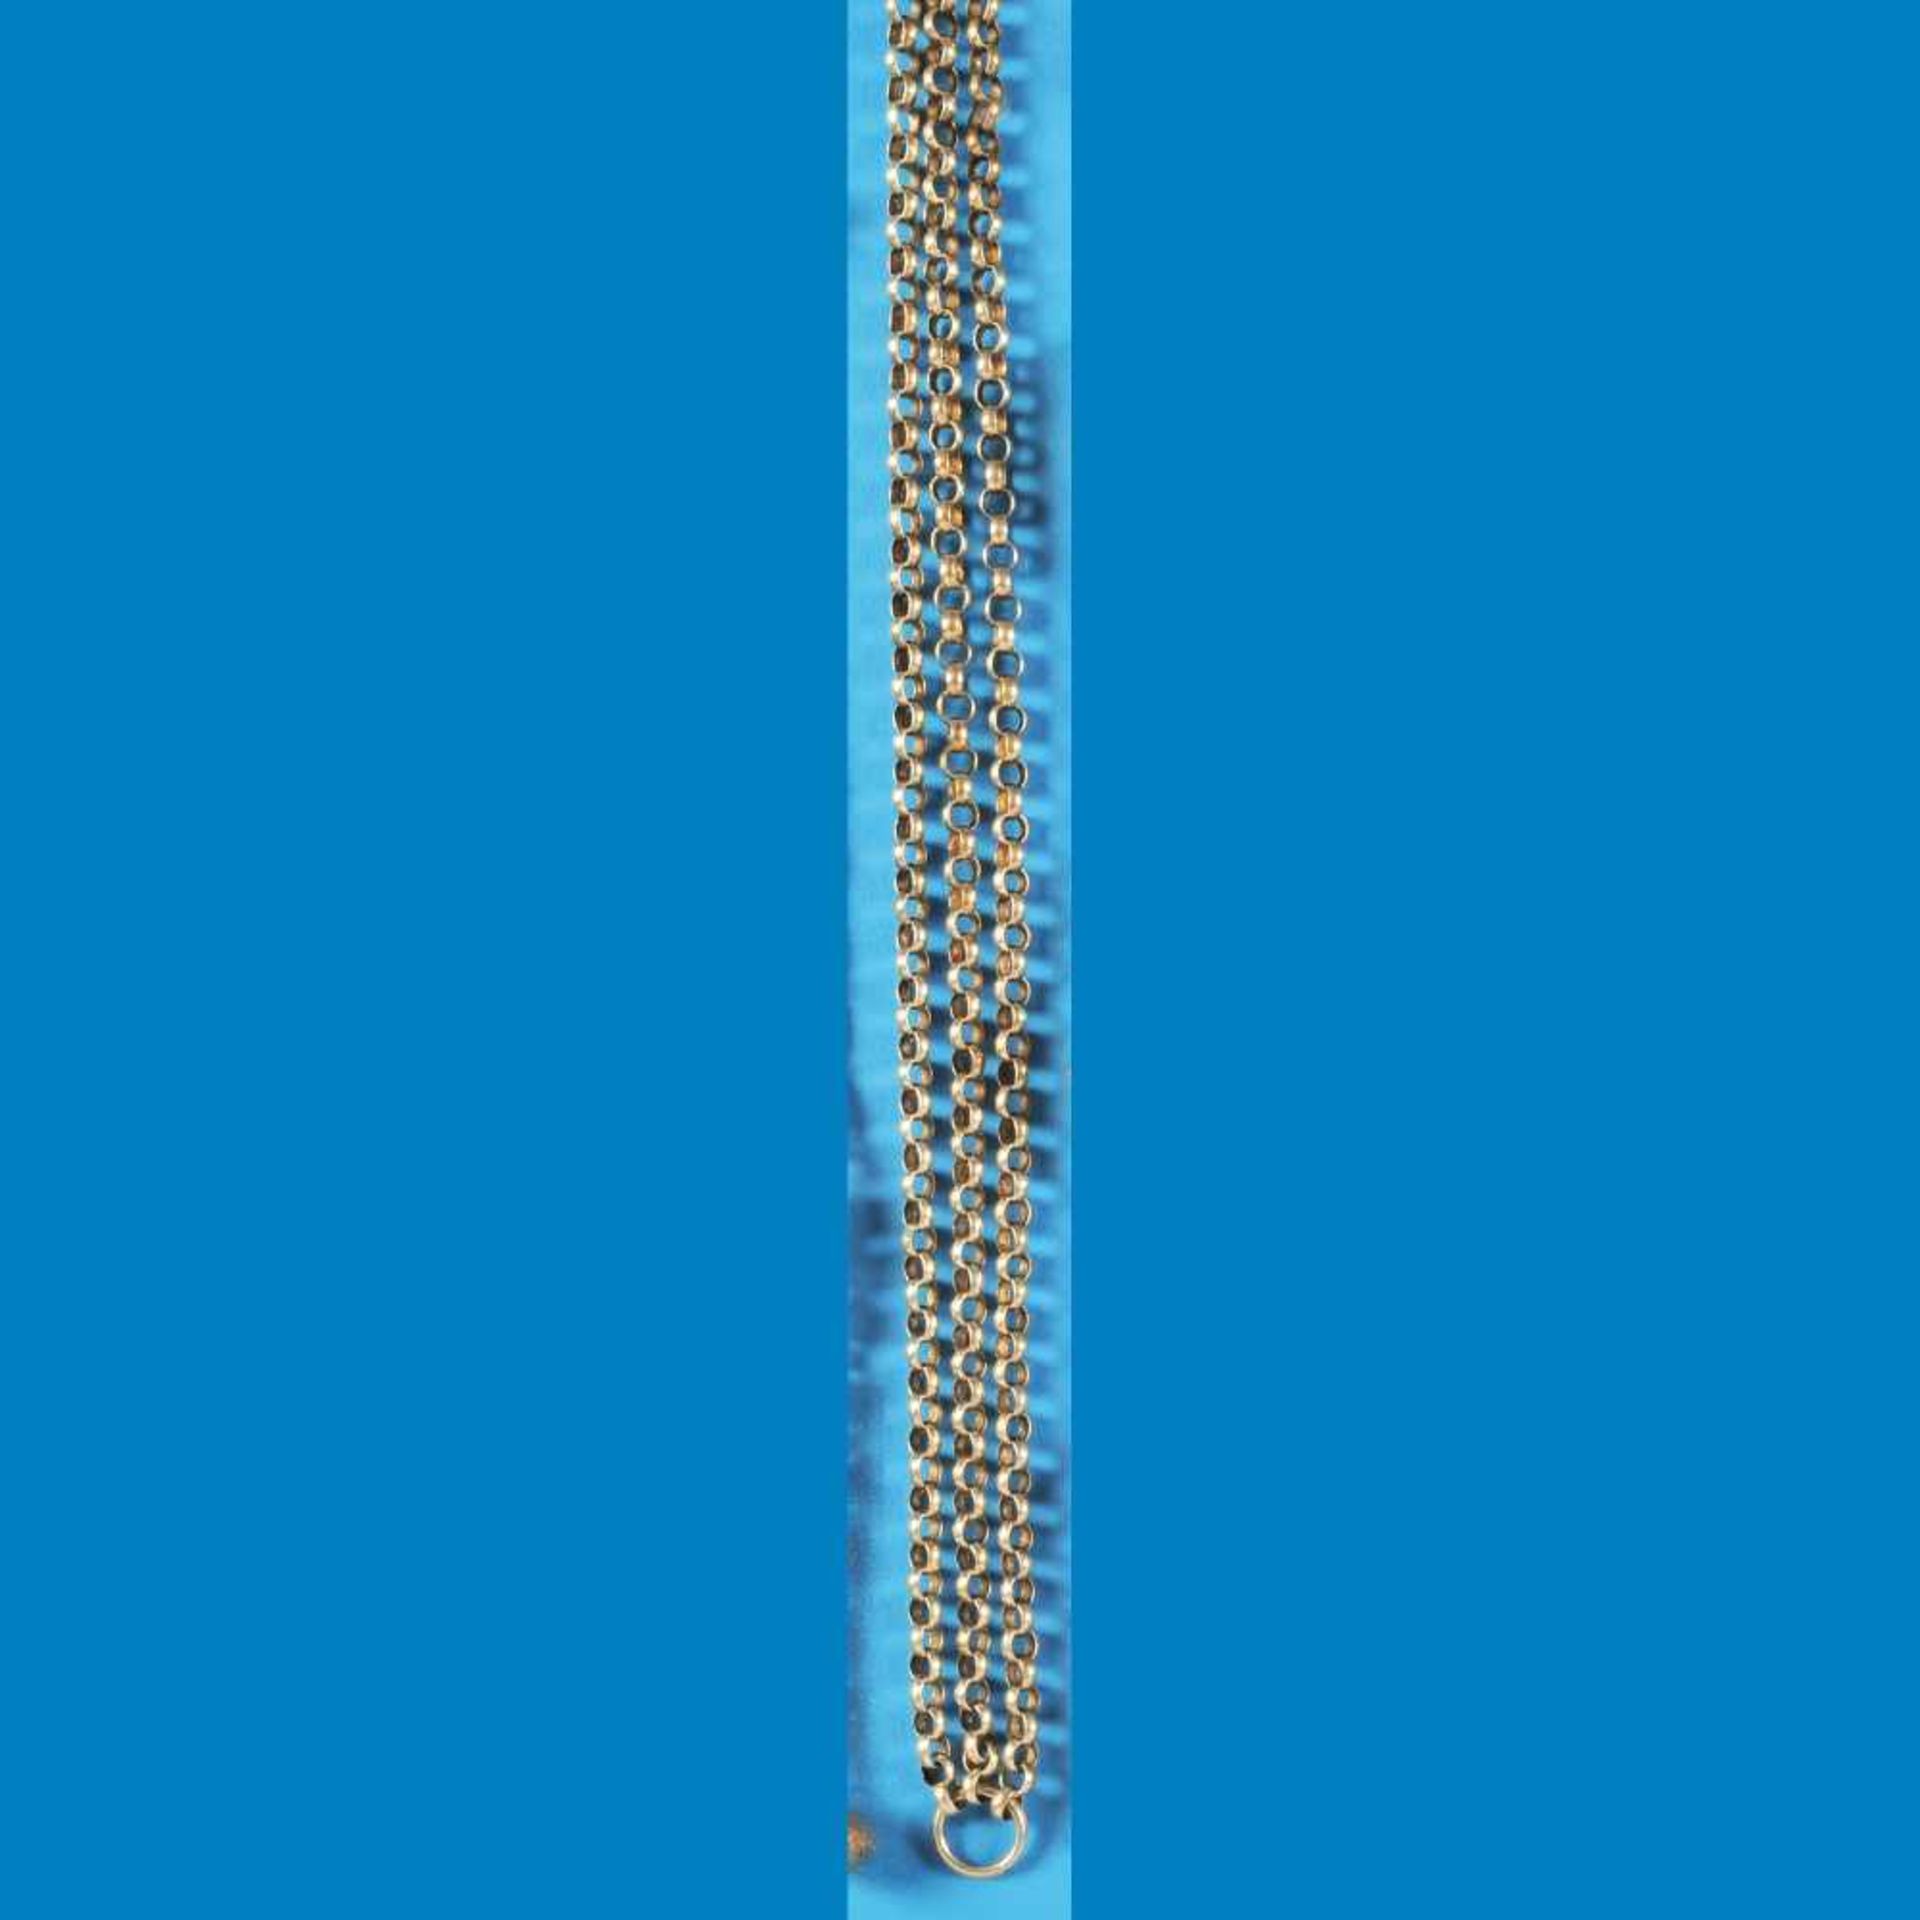 Necklace, silver-platedHalskette, versilbert, 3-reihig (7095), L = 52 cm 40